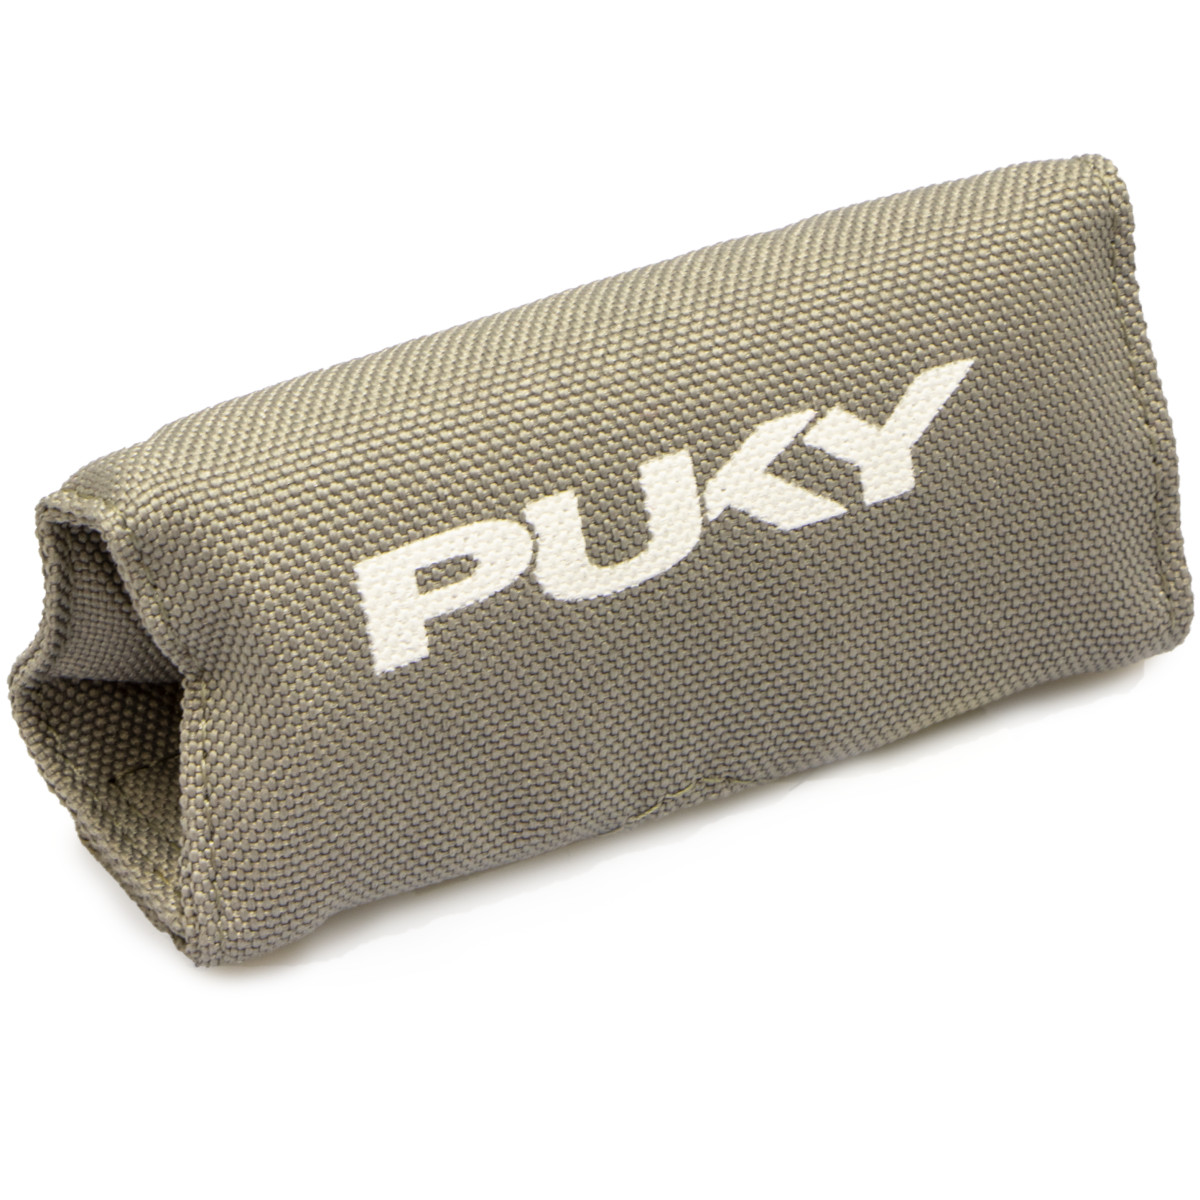 Produktbild von Puky LP1 Lenkerpolster für Pukylino / Fitsch / Pukymoto - grau